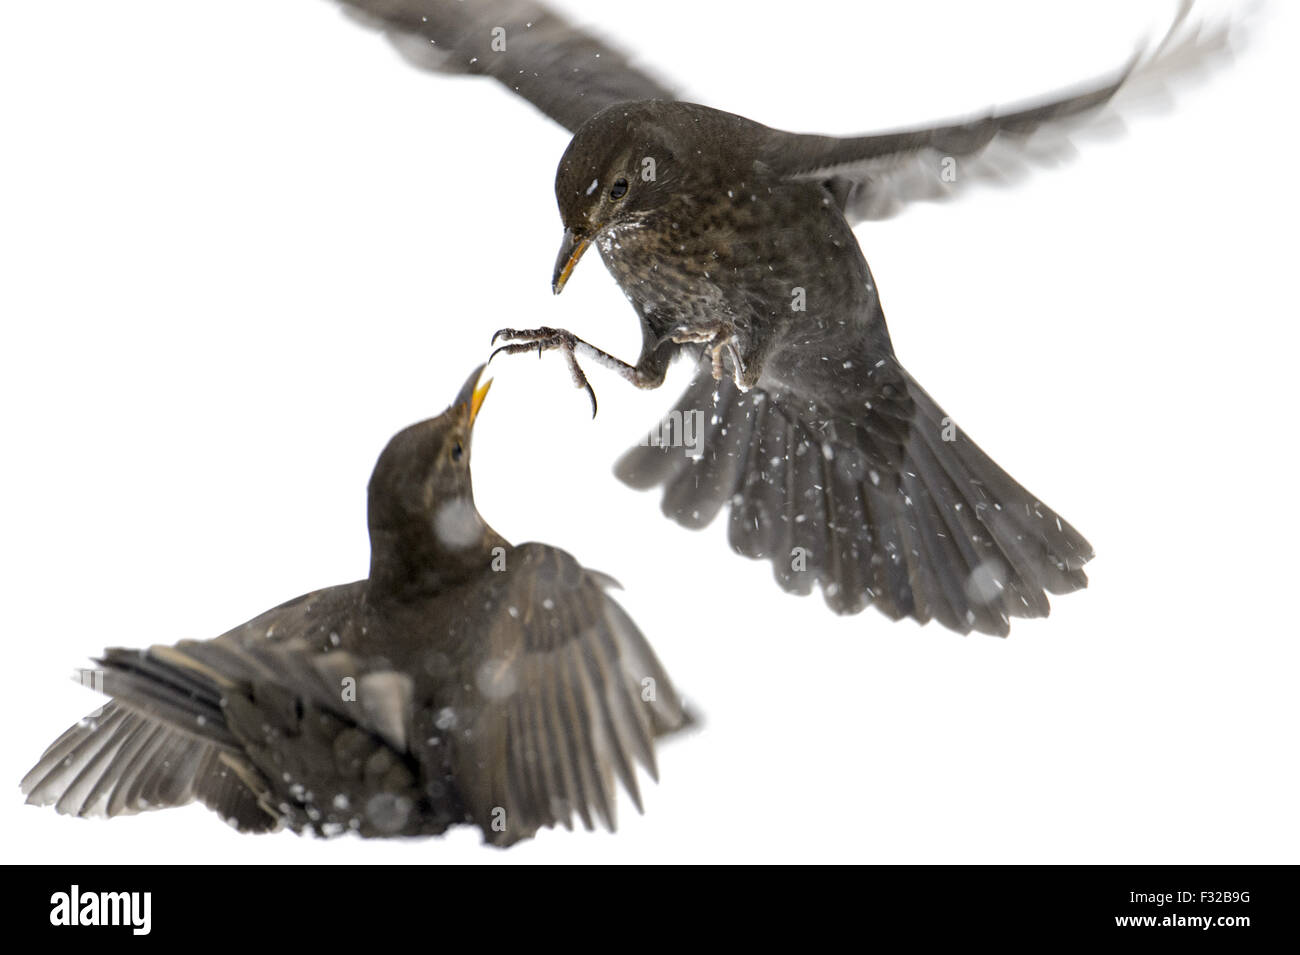 Blackbird européenne (Turdus merula) deux femelles adultes, les combats sur la neige couverts de gelée, Cannock Chase, Staffordshire, Angleterre, Janvier Banque D'Images